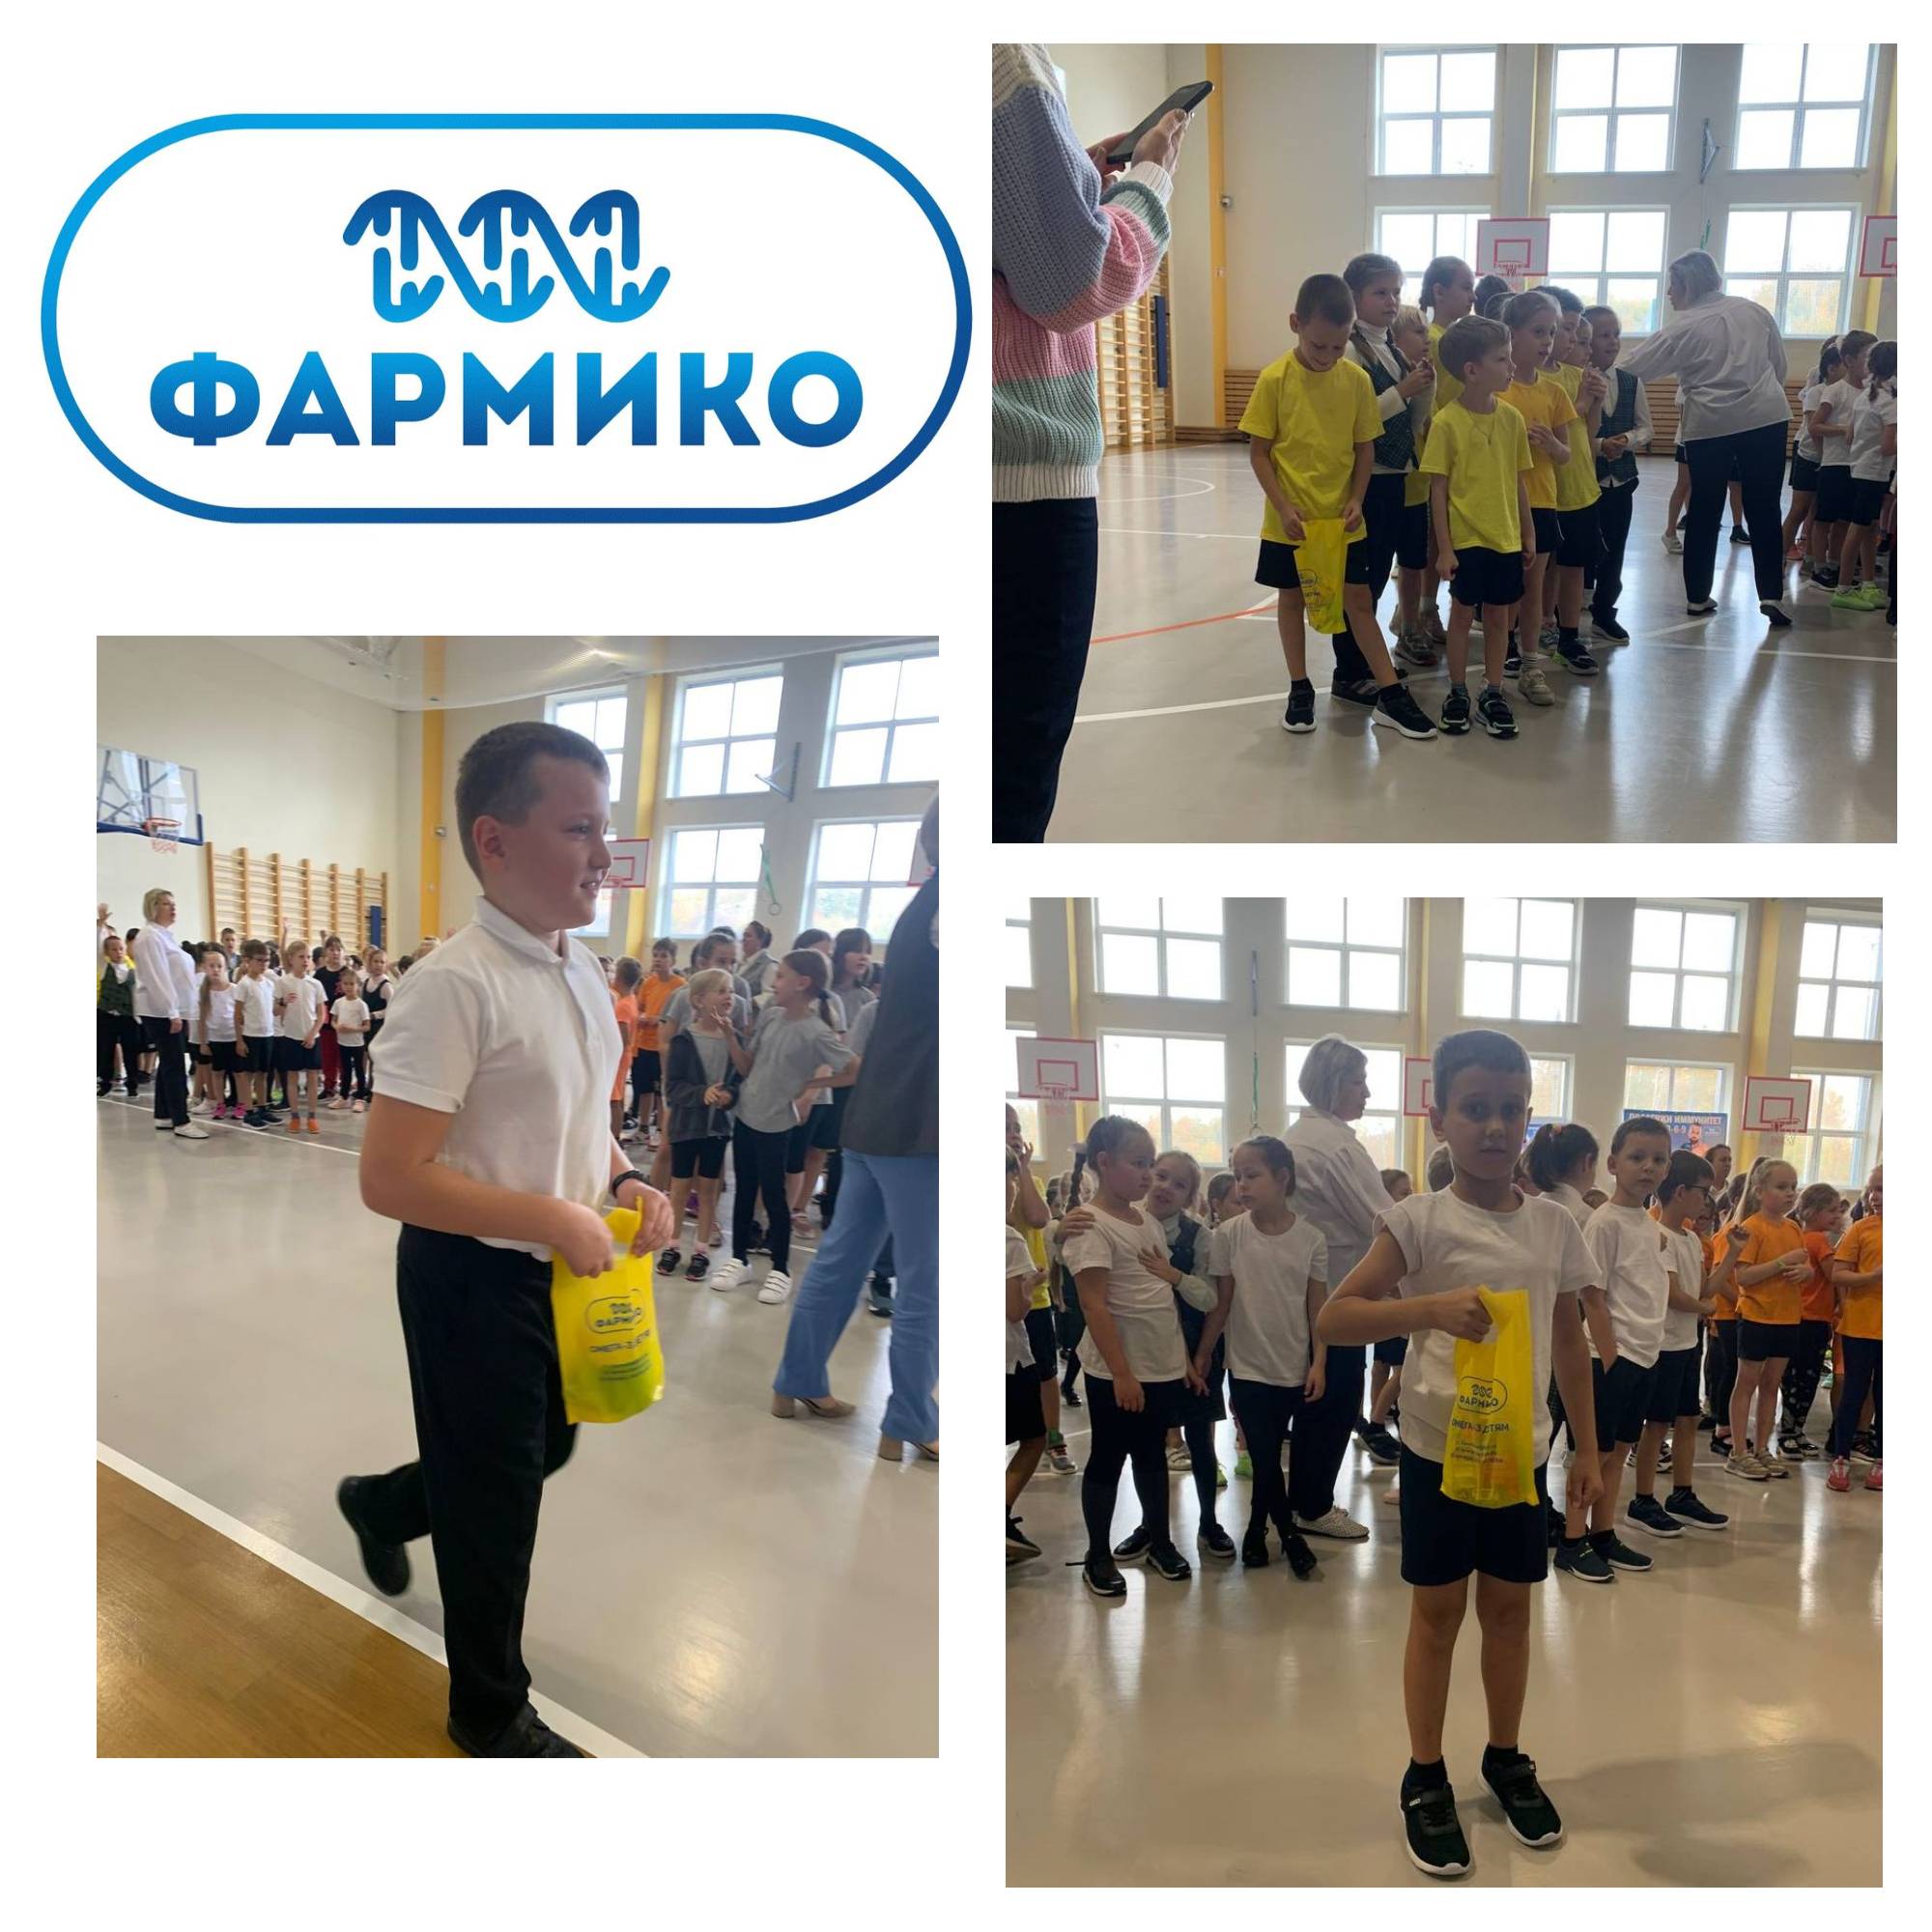 В рамках проекта Омега-3 детям в лицеи Технополис прошла Олимпийская зарядка